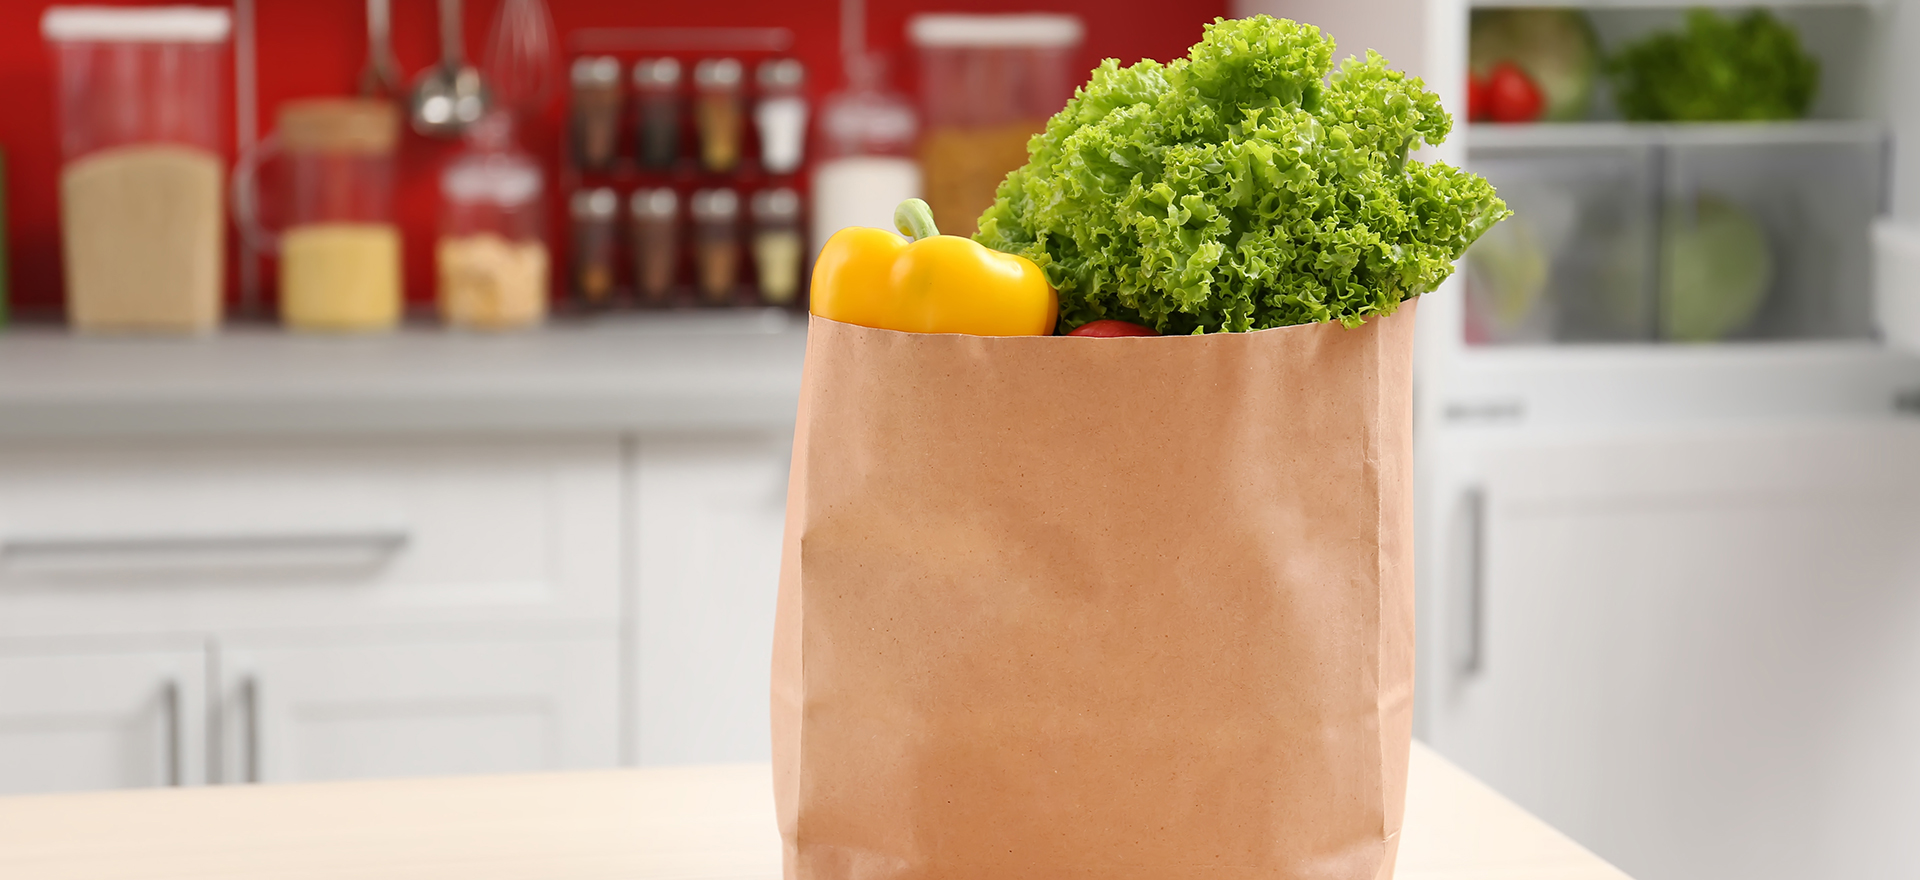 Apprenez à faire votre sac en papier pour votre bac de compost